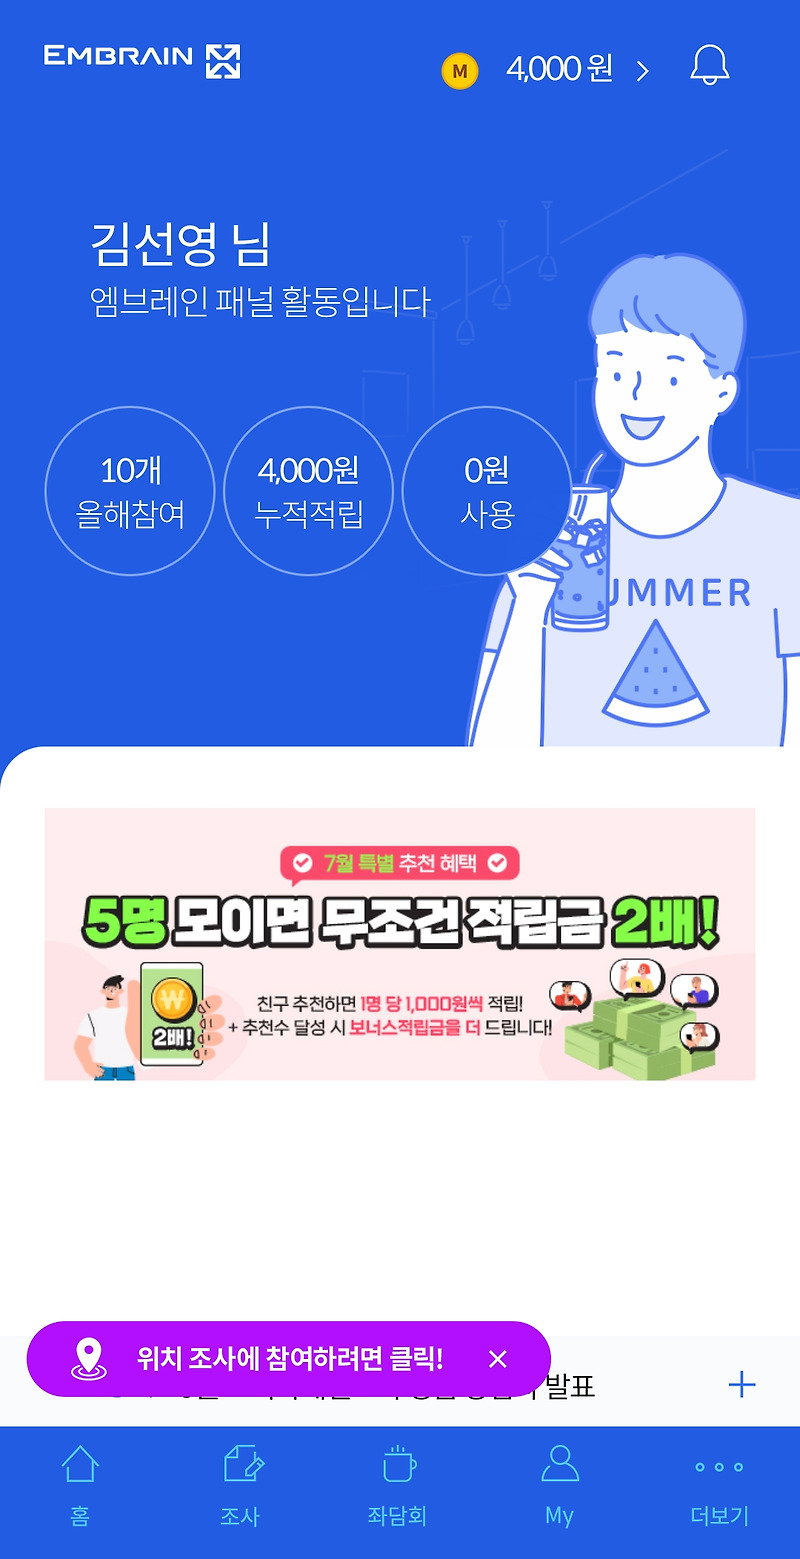 소소한 부업 ' 엠브레인 패널파워 ' 소개 합니다.